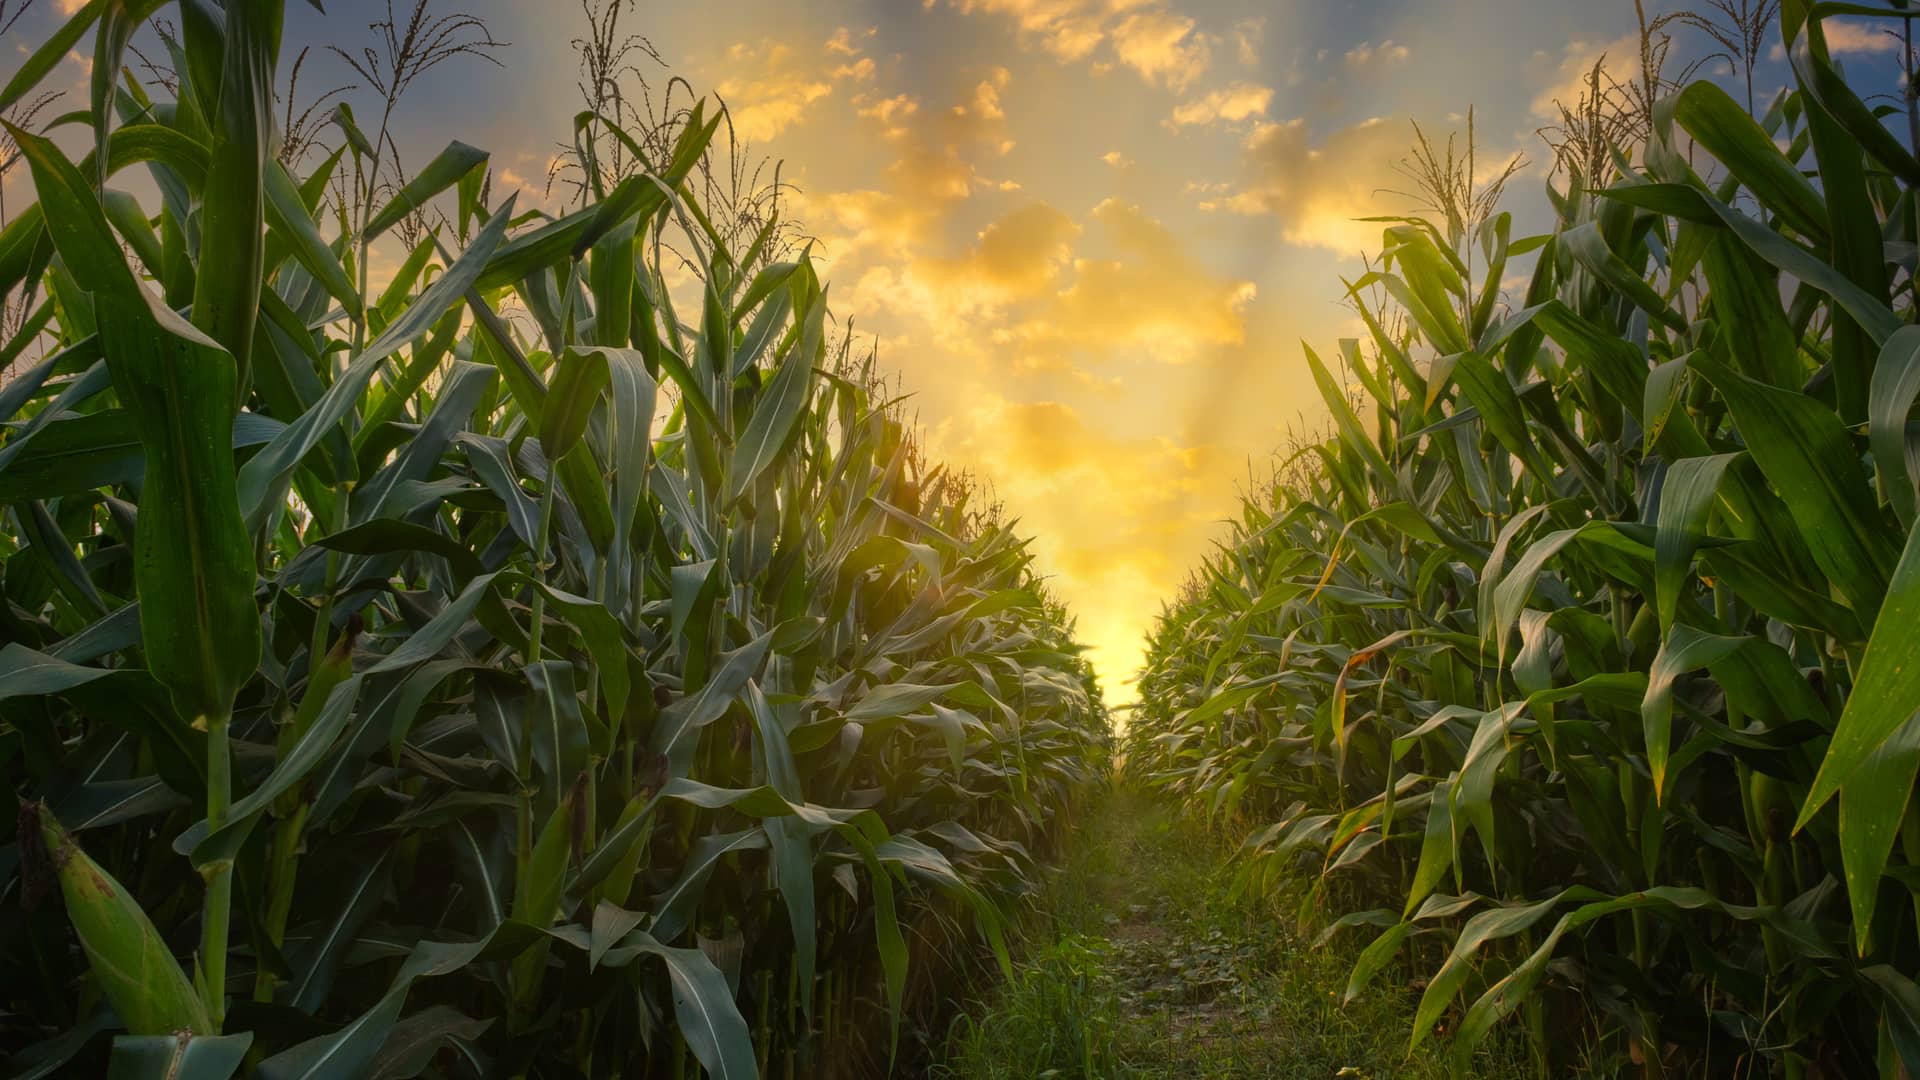 Campos de maiz representa uno de los primeros niveles de la piramide de la biomasa